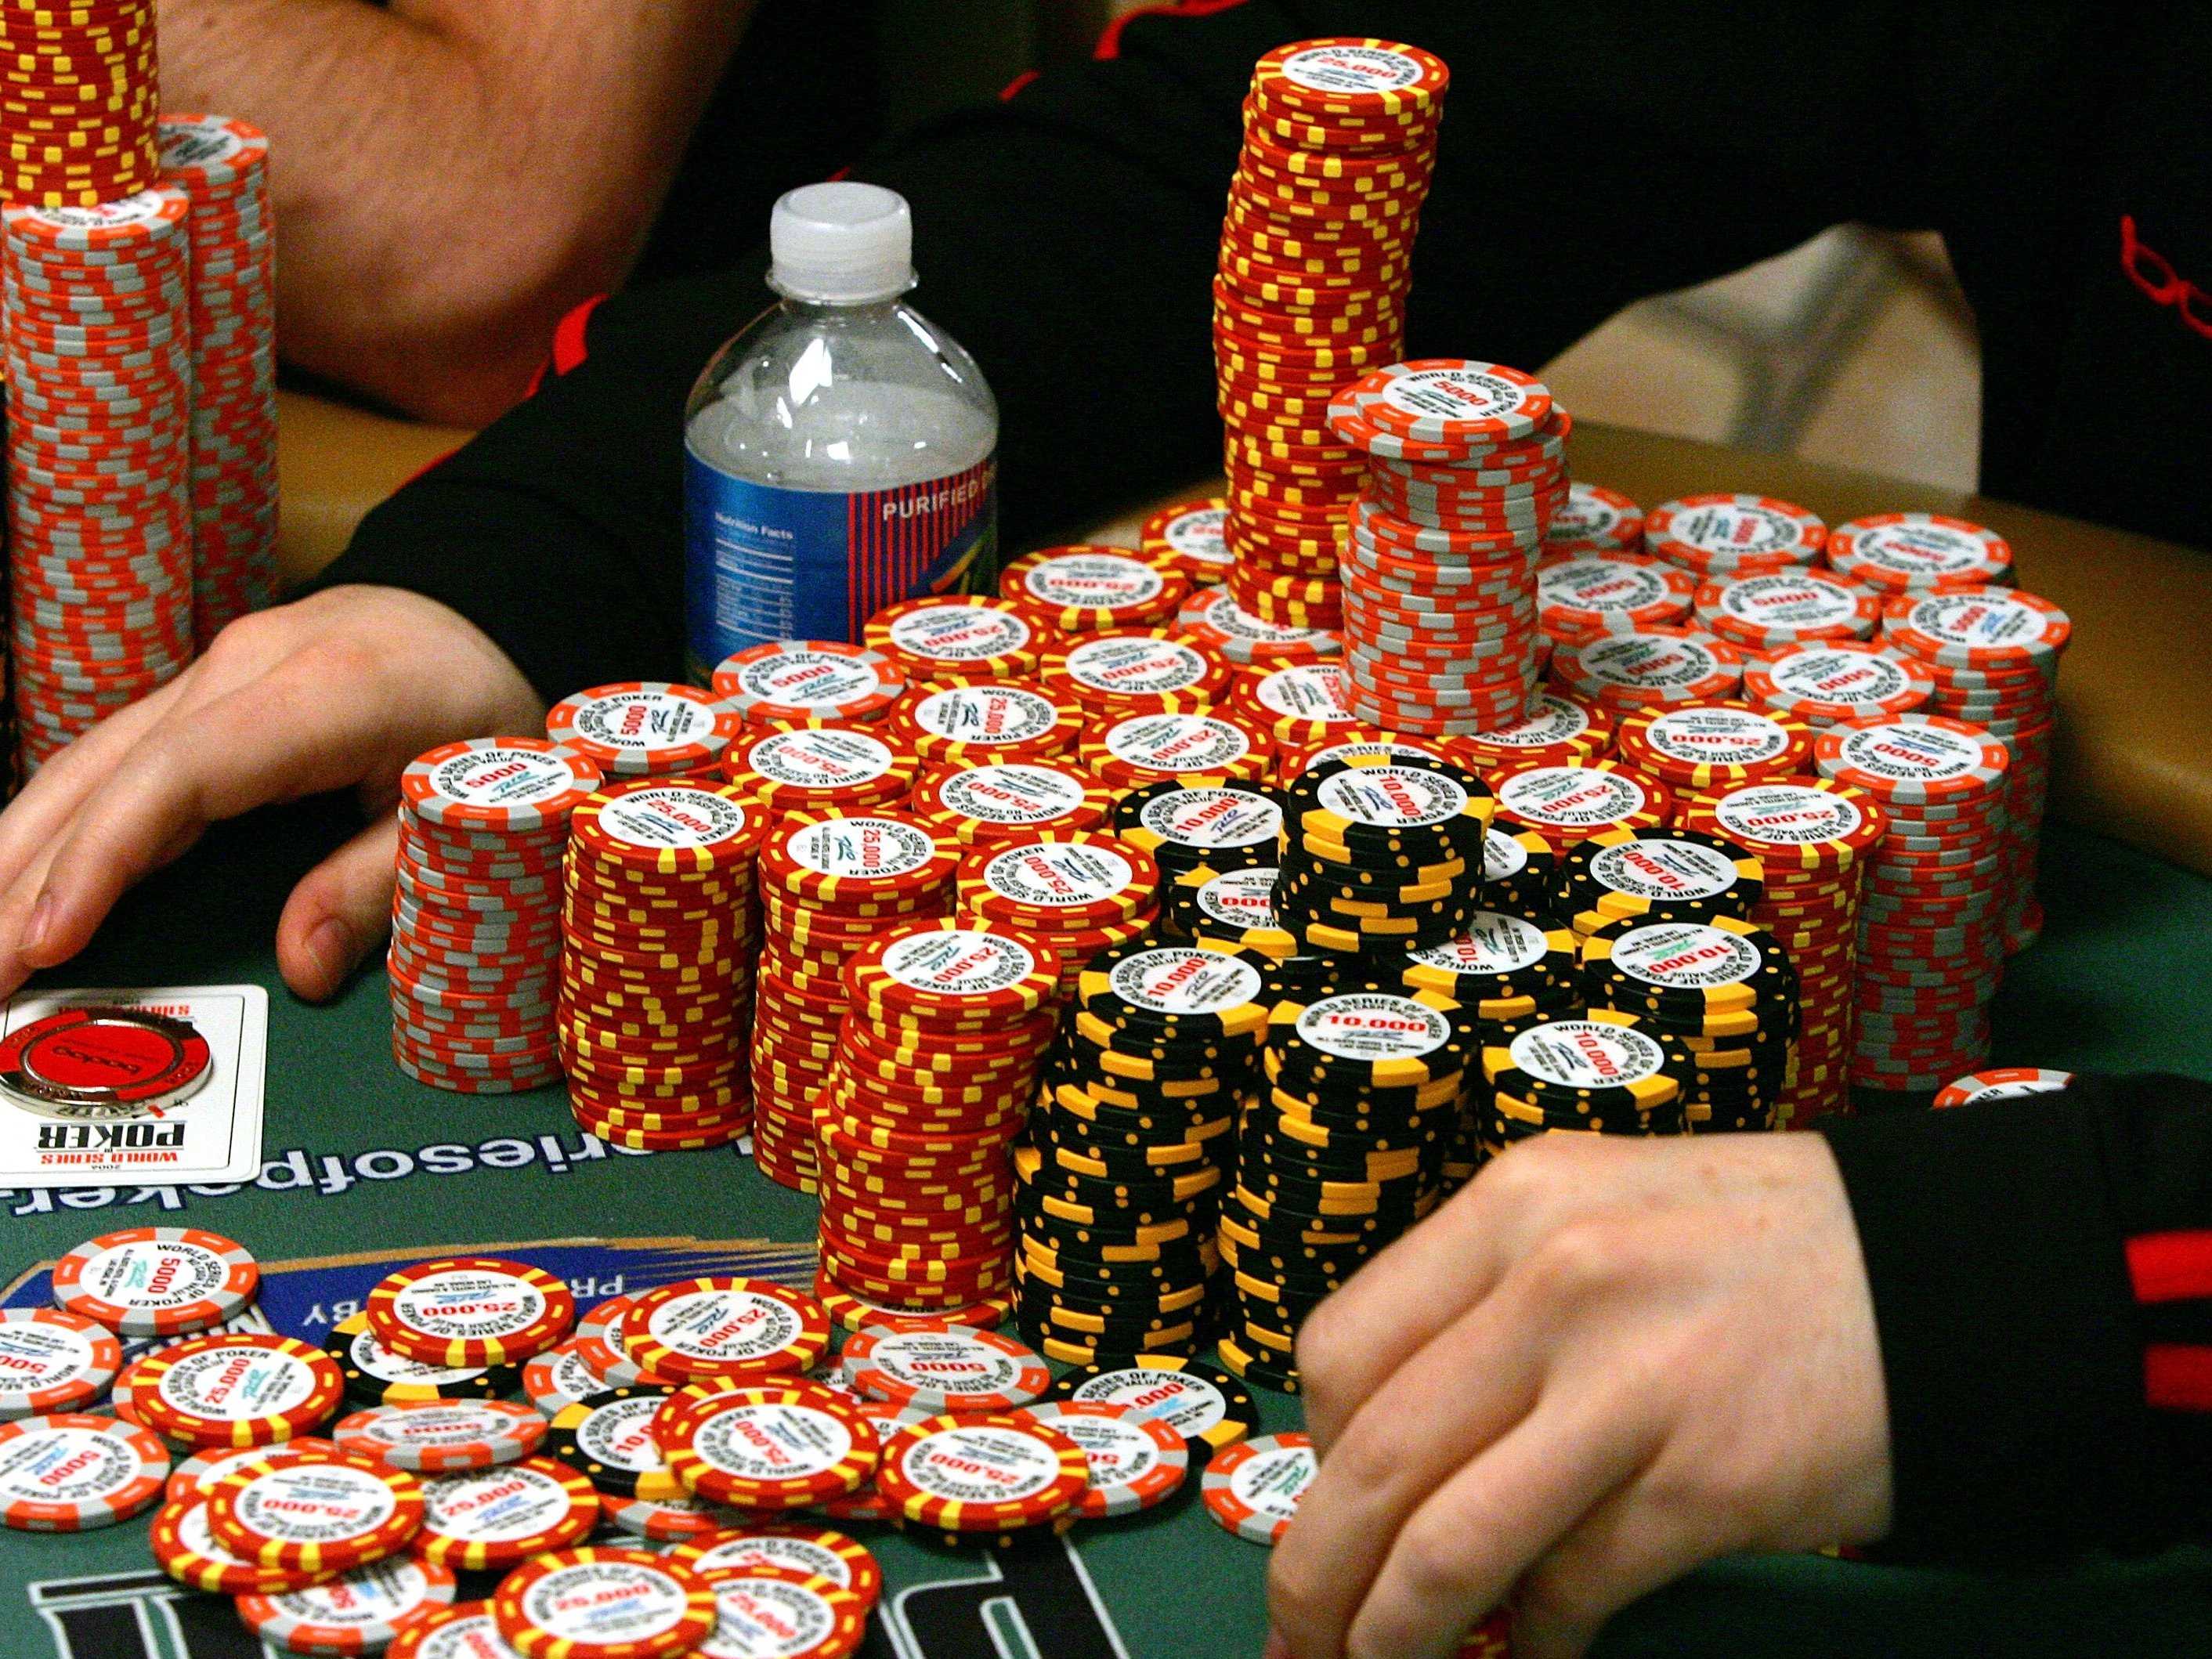 扑克玩家Justin Lapka被指责在WSOPC赛事中“多领了筹码”